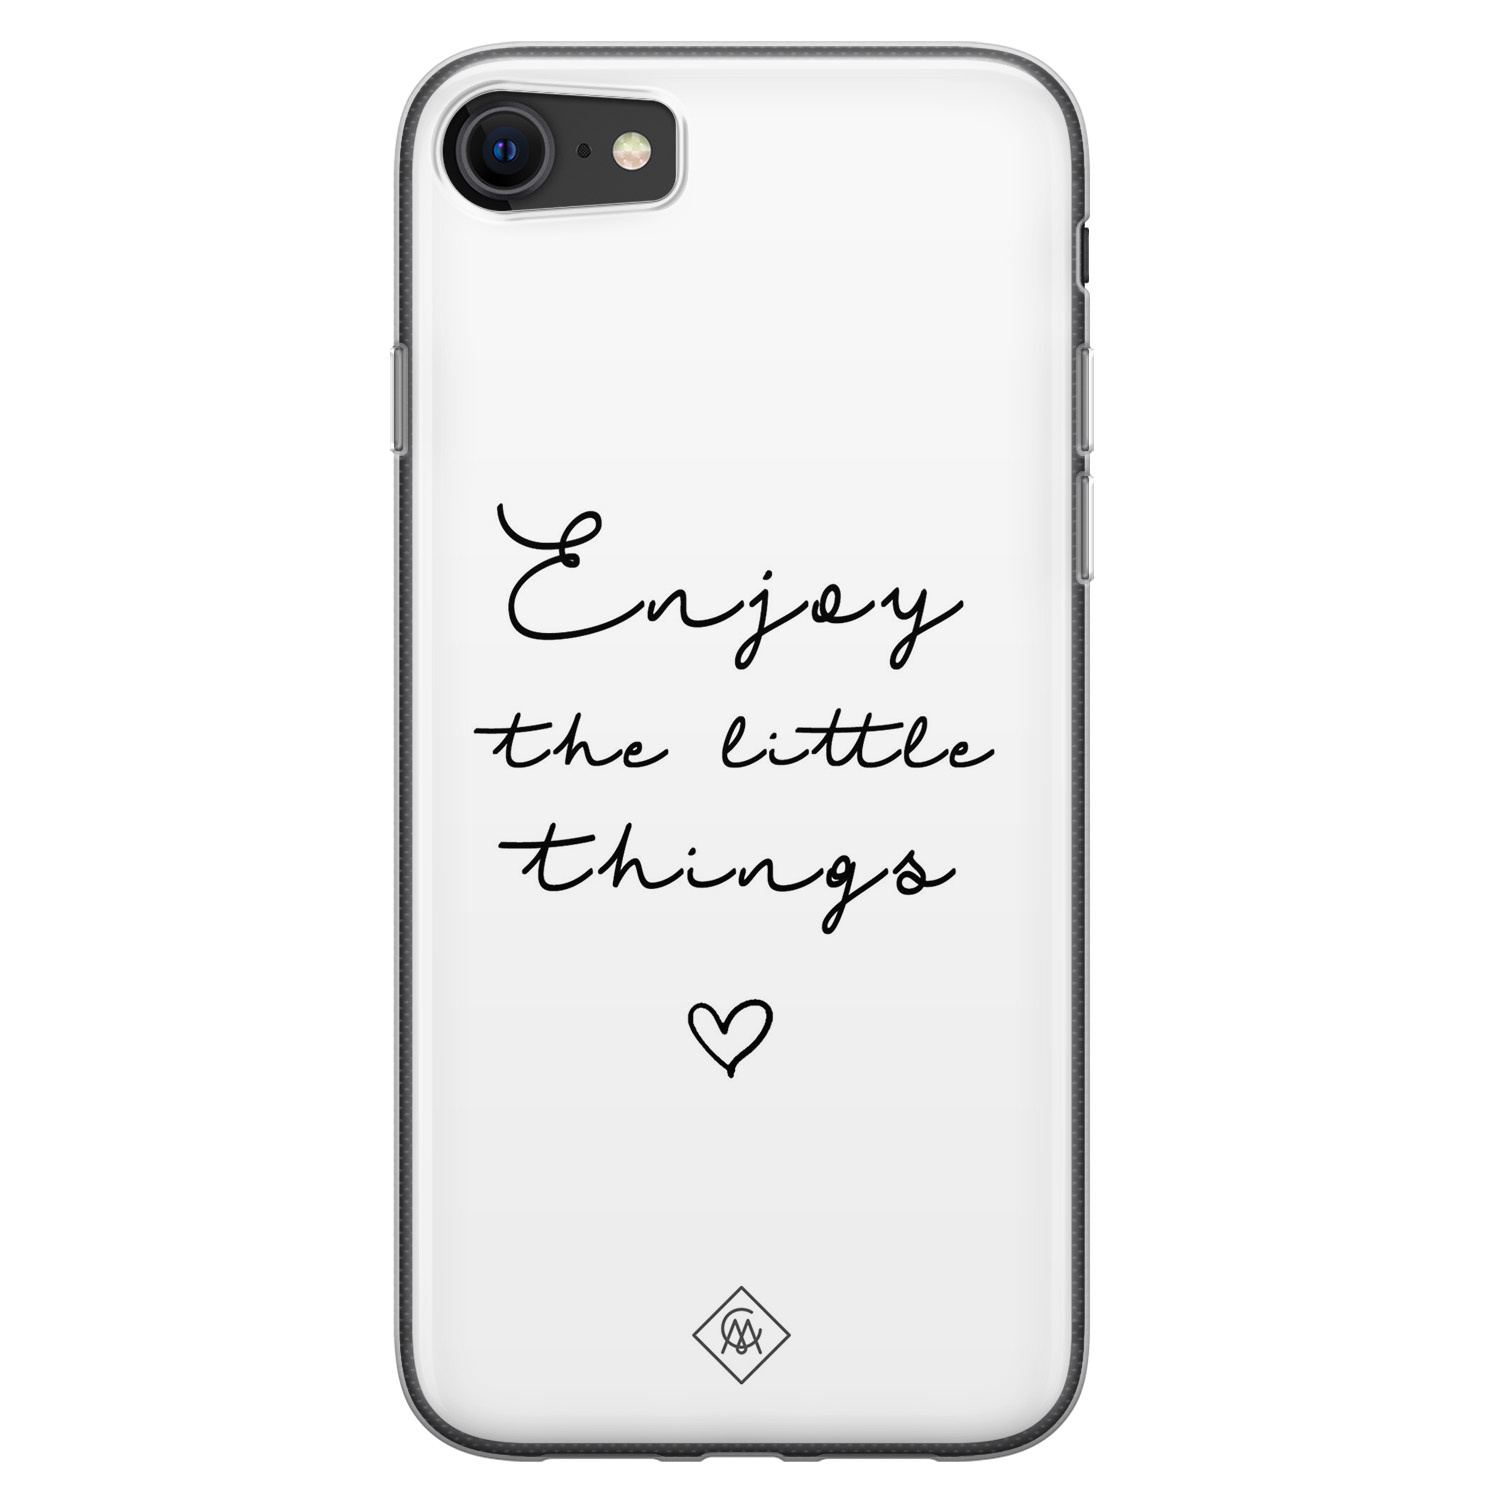 Beven Voorbeeld Handschrift iPhone SE 2020 siliconen hoesje - Enjoy life - Casimoda.nl